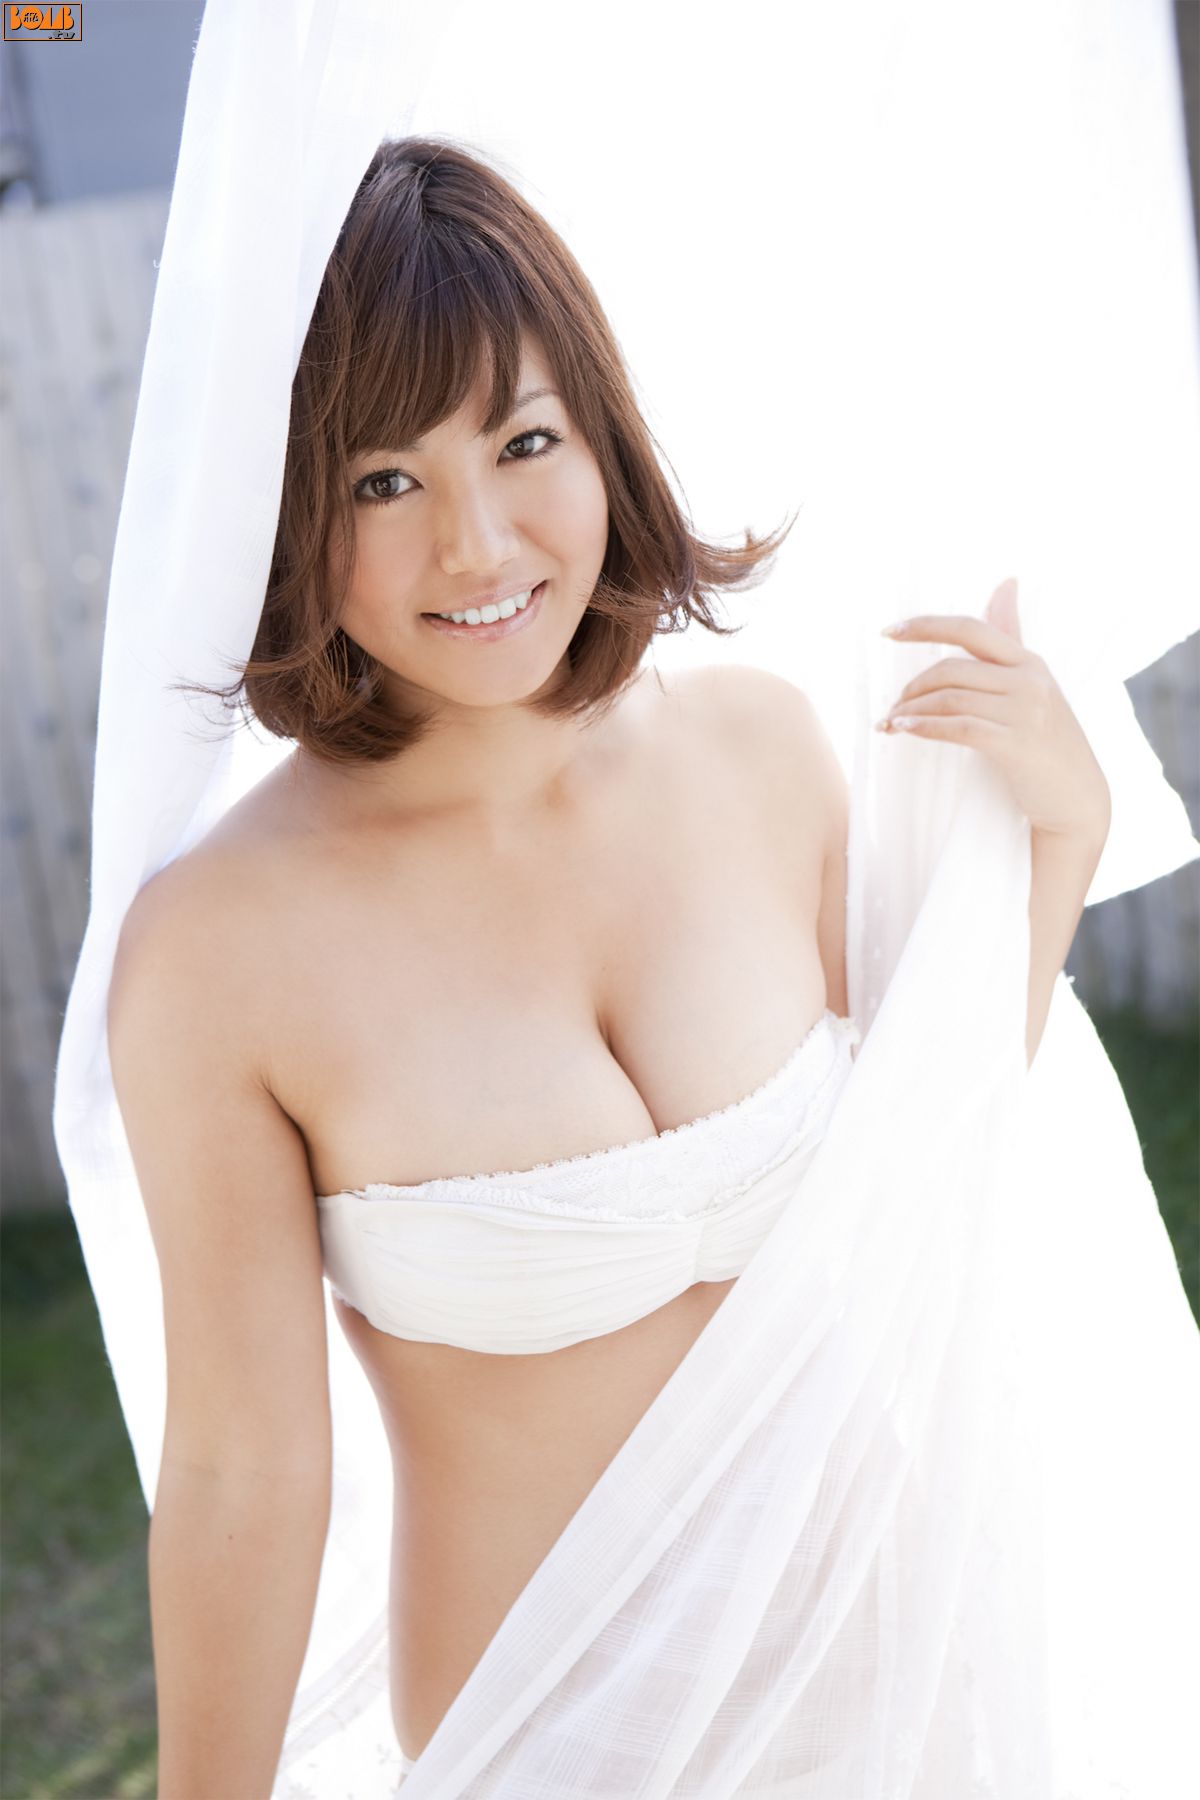 [Bomb.TV] 2010年09月刊 磯山さやか Sayaka isoyama 写真集31